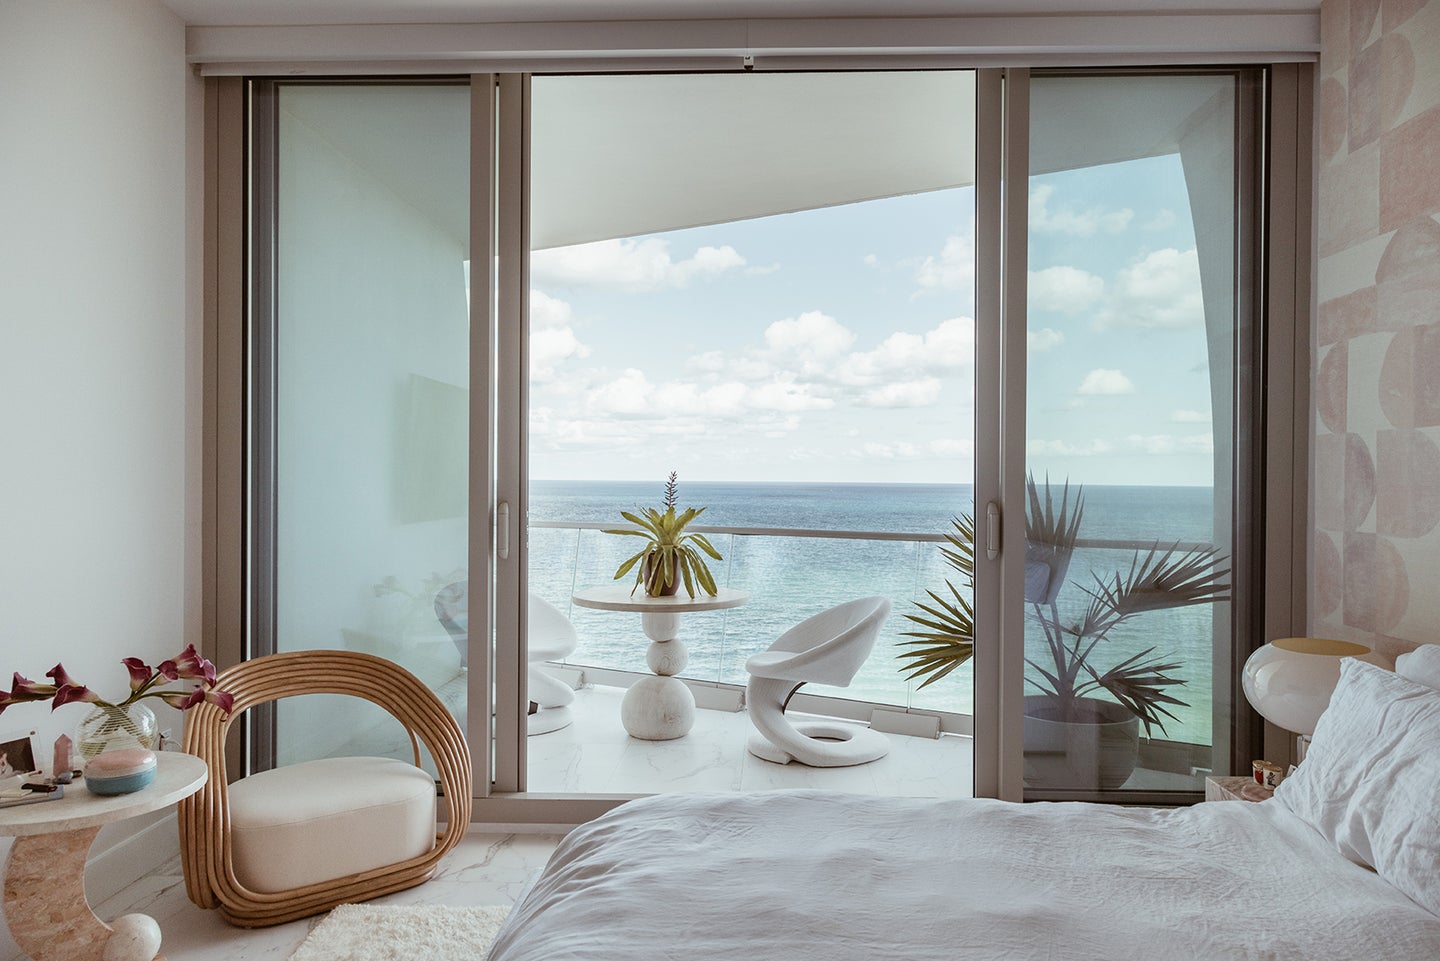 window view overlooking ocean